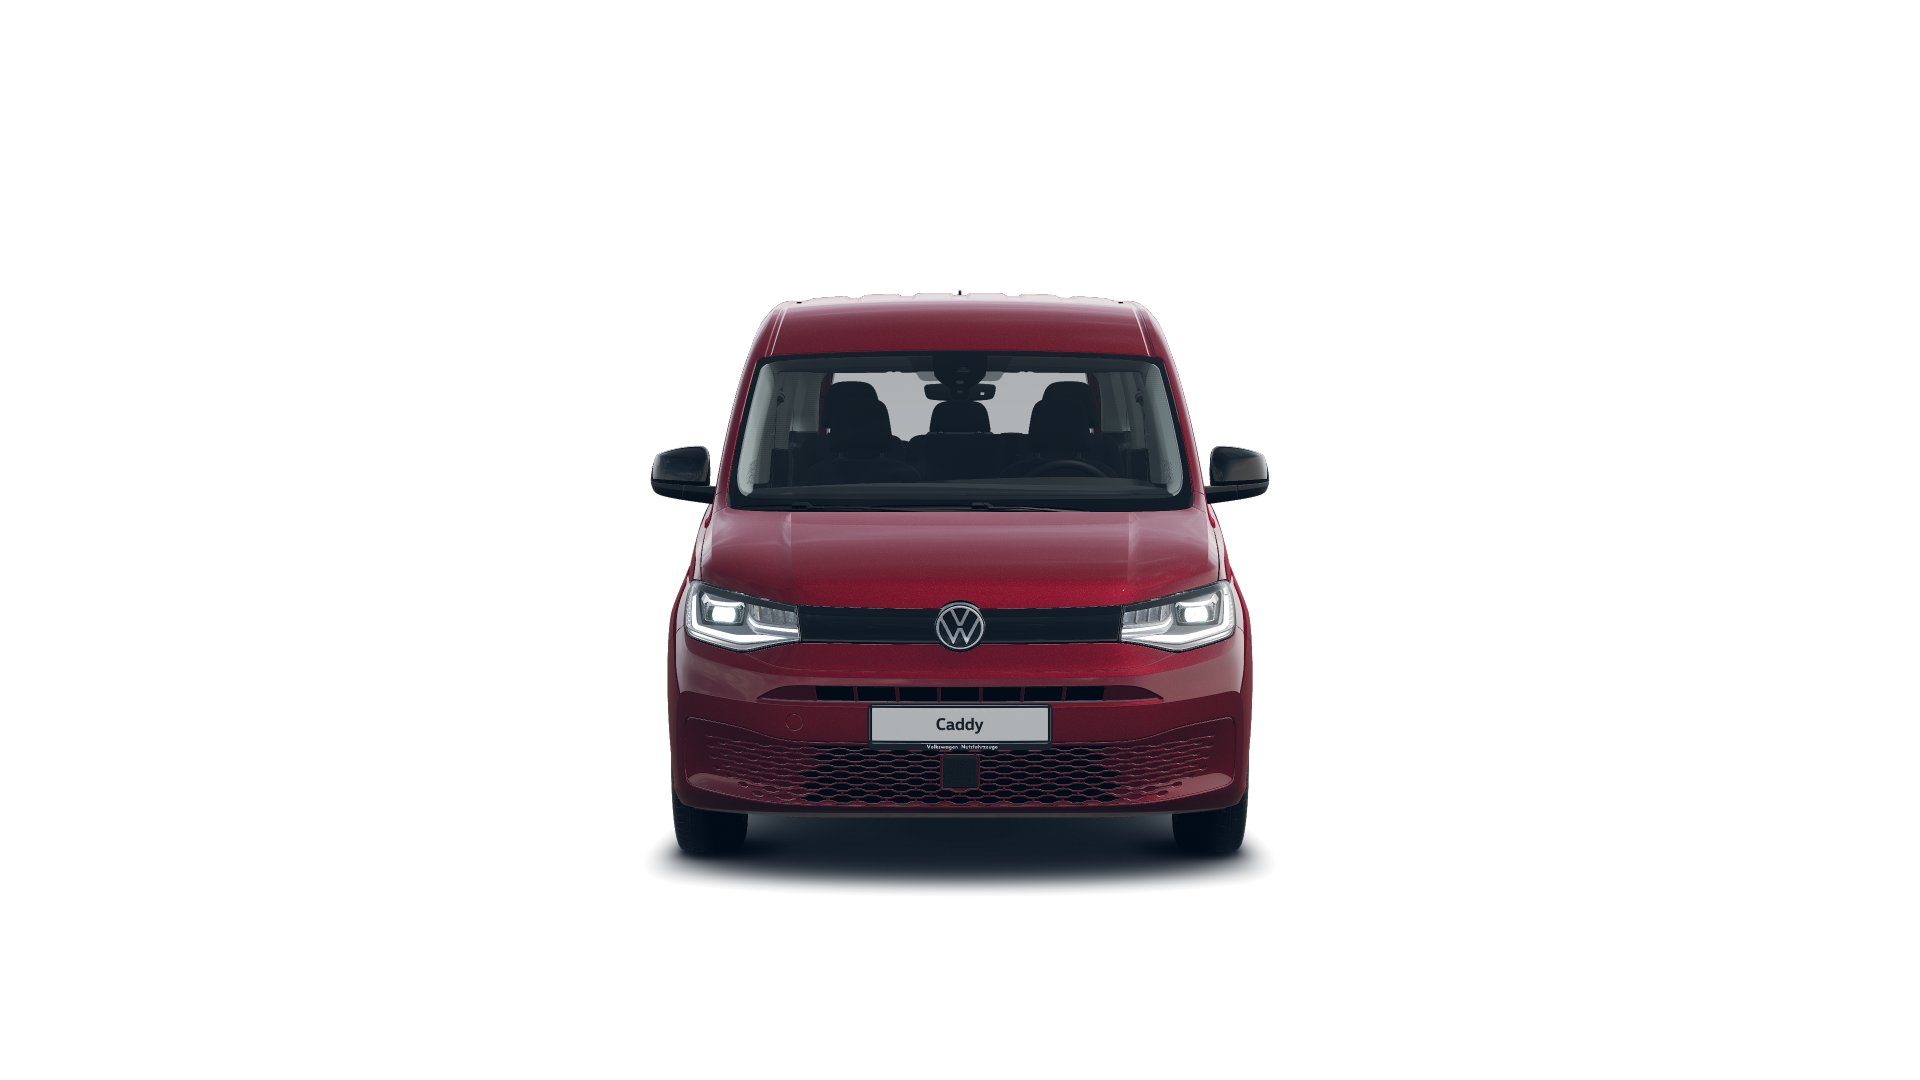 Volkswagen Caddy Origin 2.0 TDI 75 kW (102 CV)